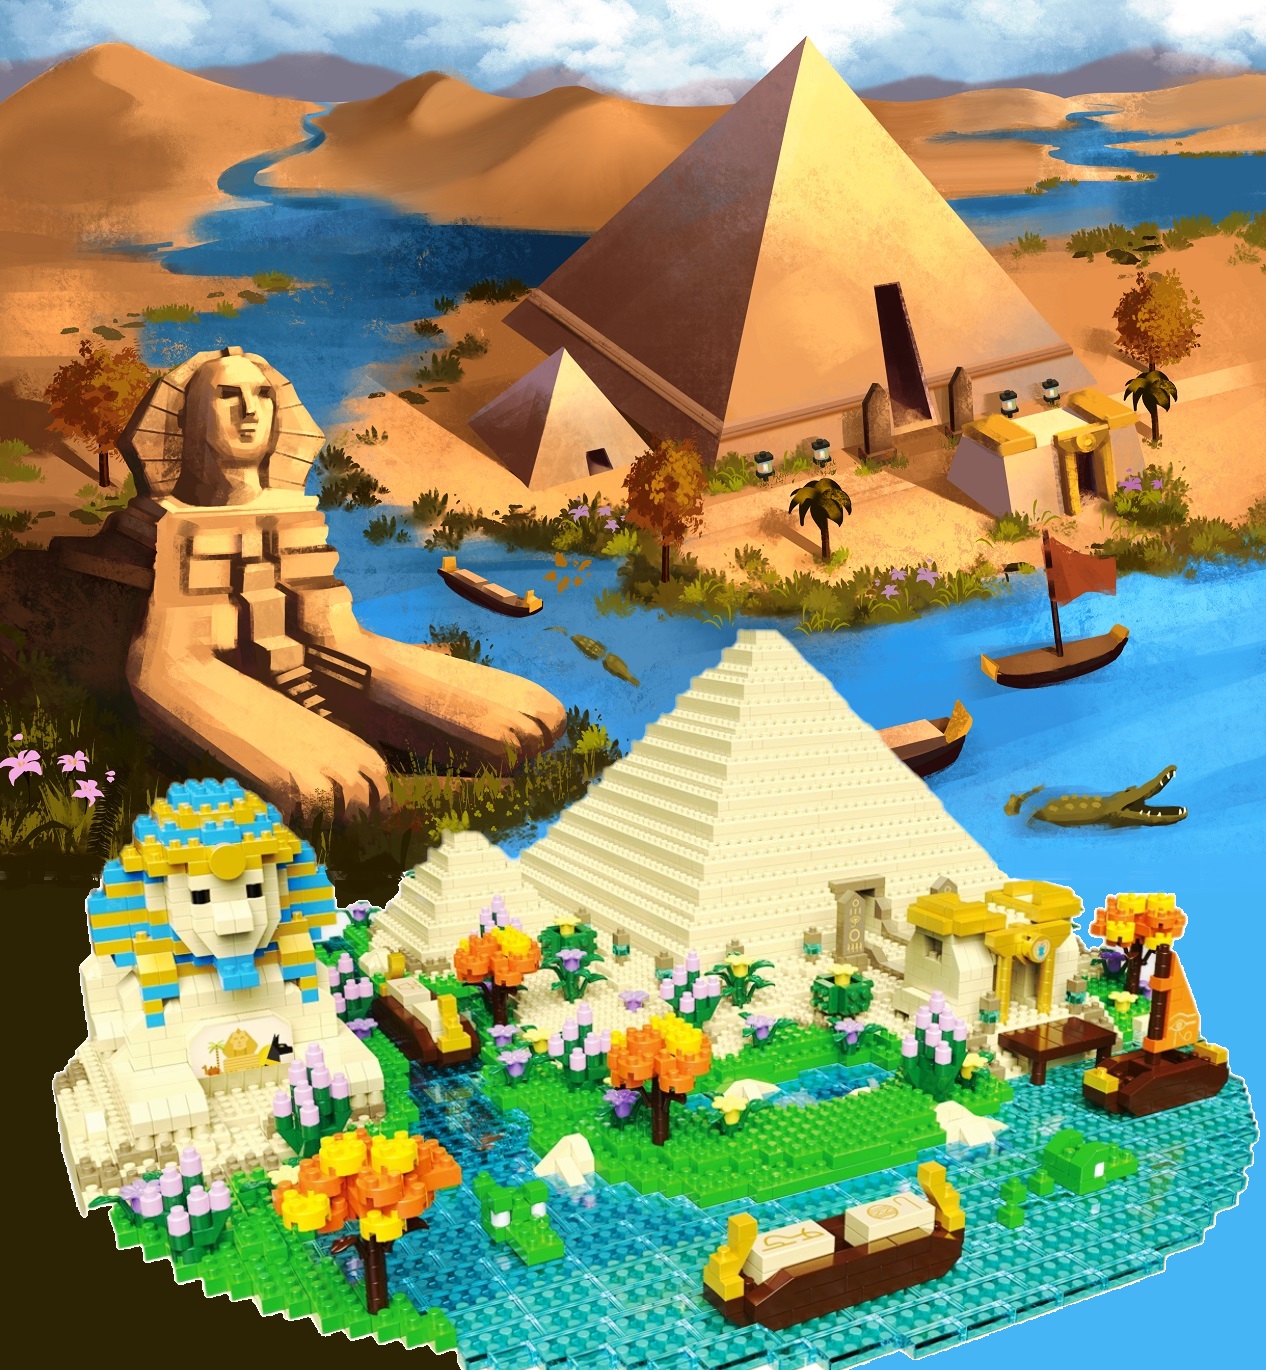 Конструктор 3D из миниблоков DAIA Египетские пирамиды и Сфинкс 3968 элементов - DI668-17 конструктор 3d из миниблоков daia принц в красной шляпе 1268 элементов di668 18